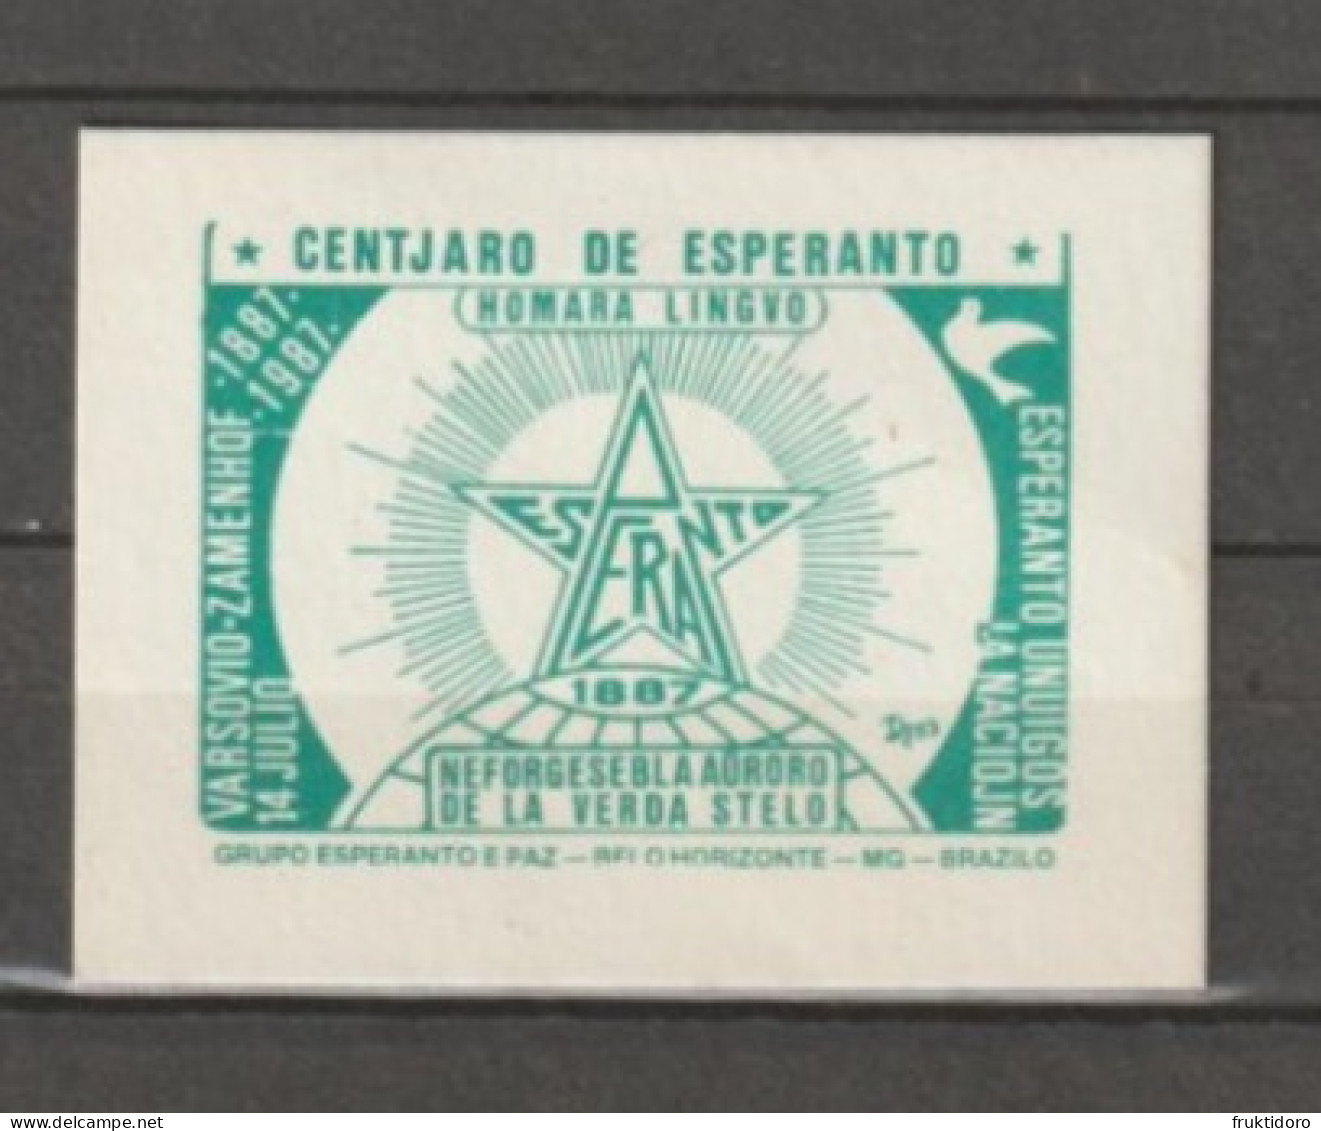 AKEO 150 Brazil Small Card To Celebrate 100 Years Esperanto - Centjarigxo De Esperanto En Brazilo - Belo Horizonte - Florianópolis